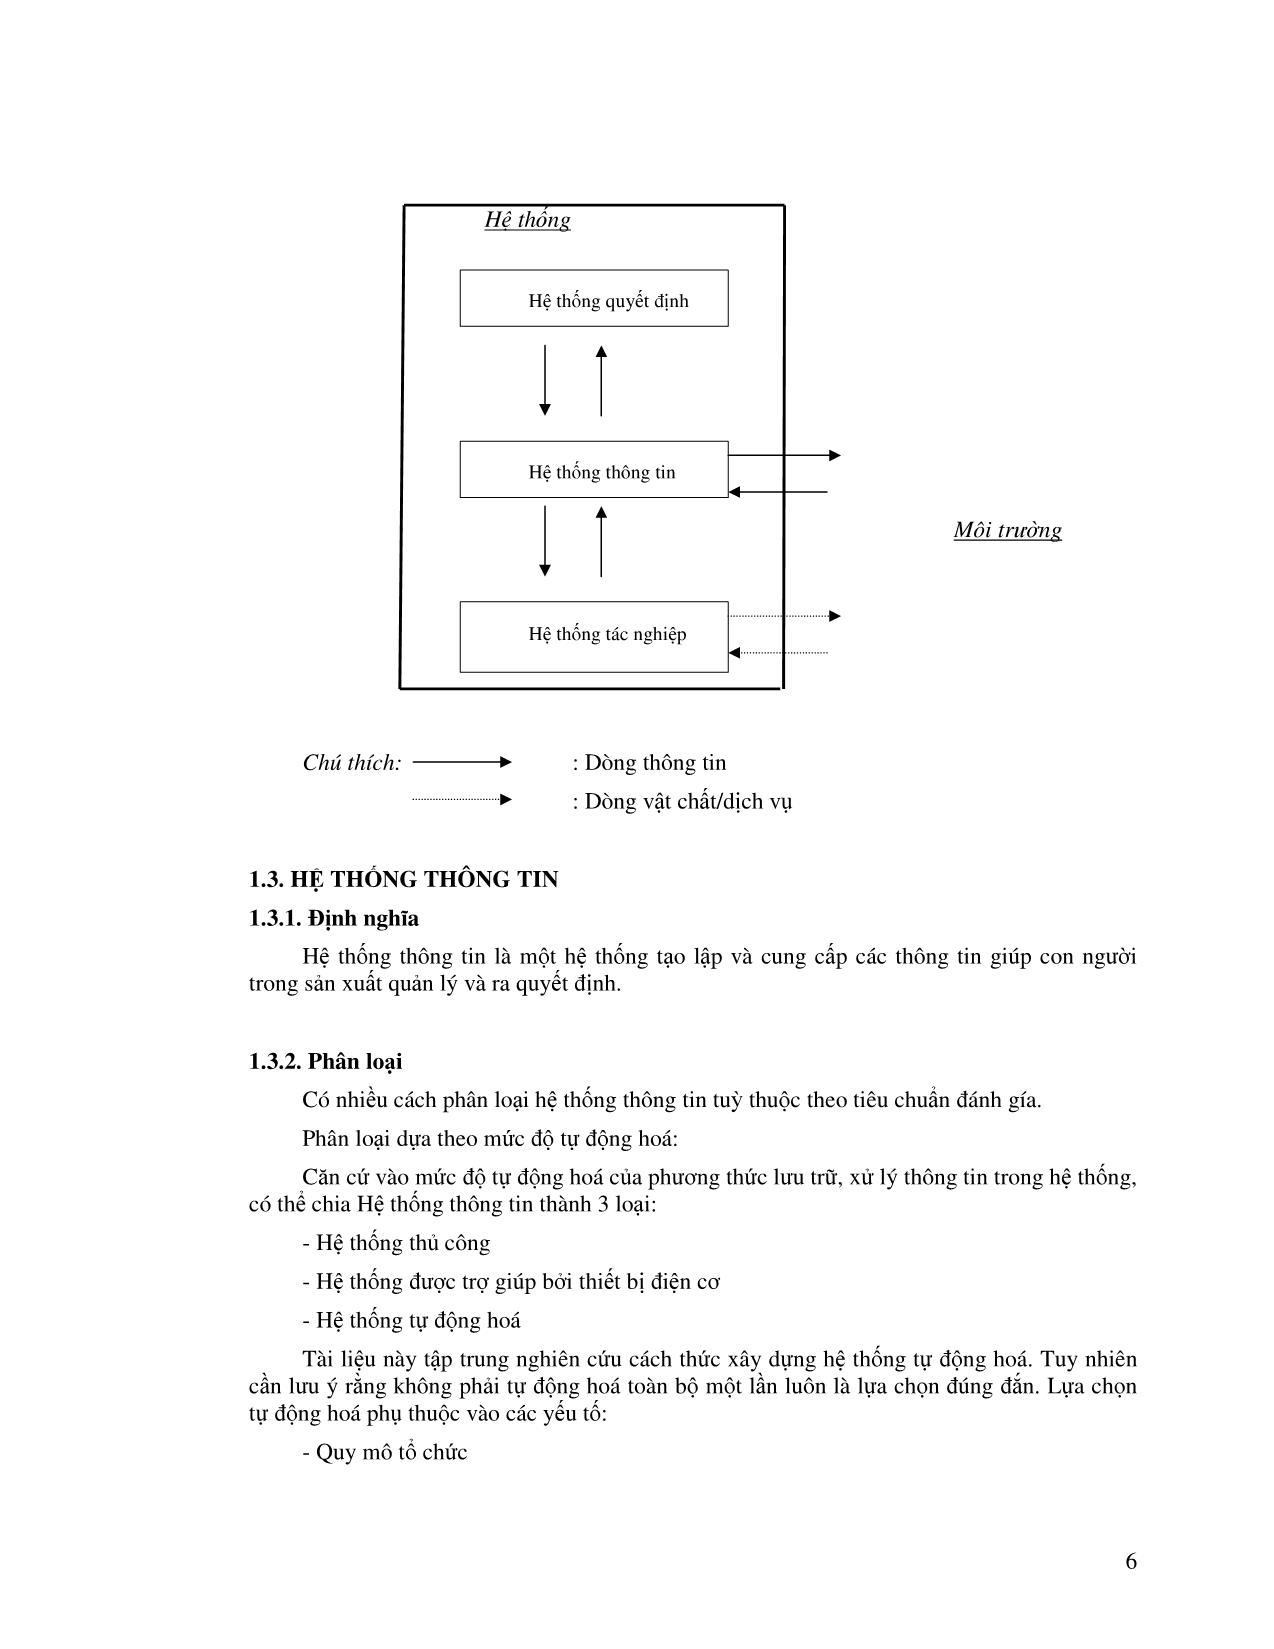 Bài giảng Hệ thống thông tin bất động sản - Nguyễn Đình Công trang 10